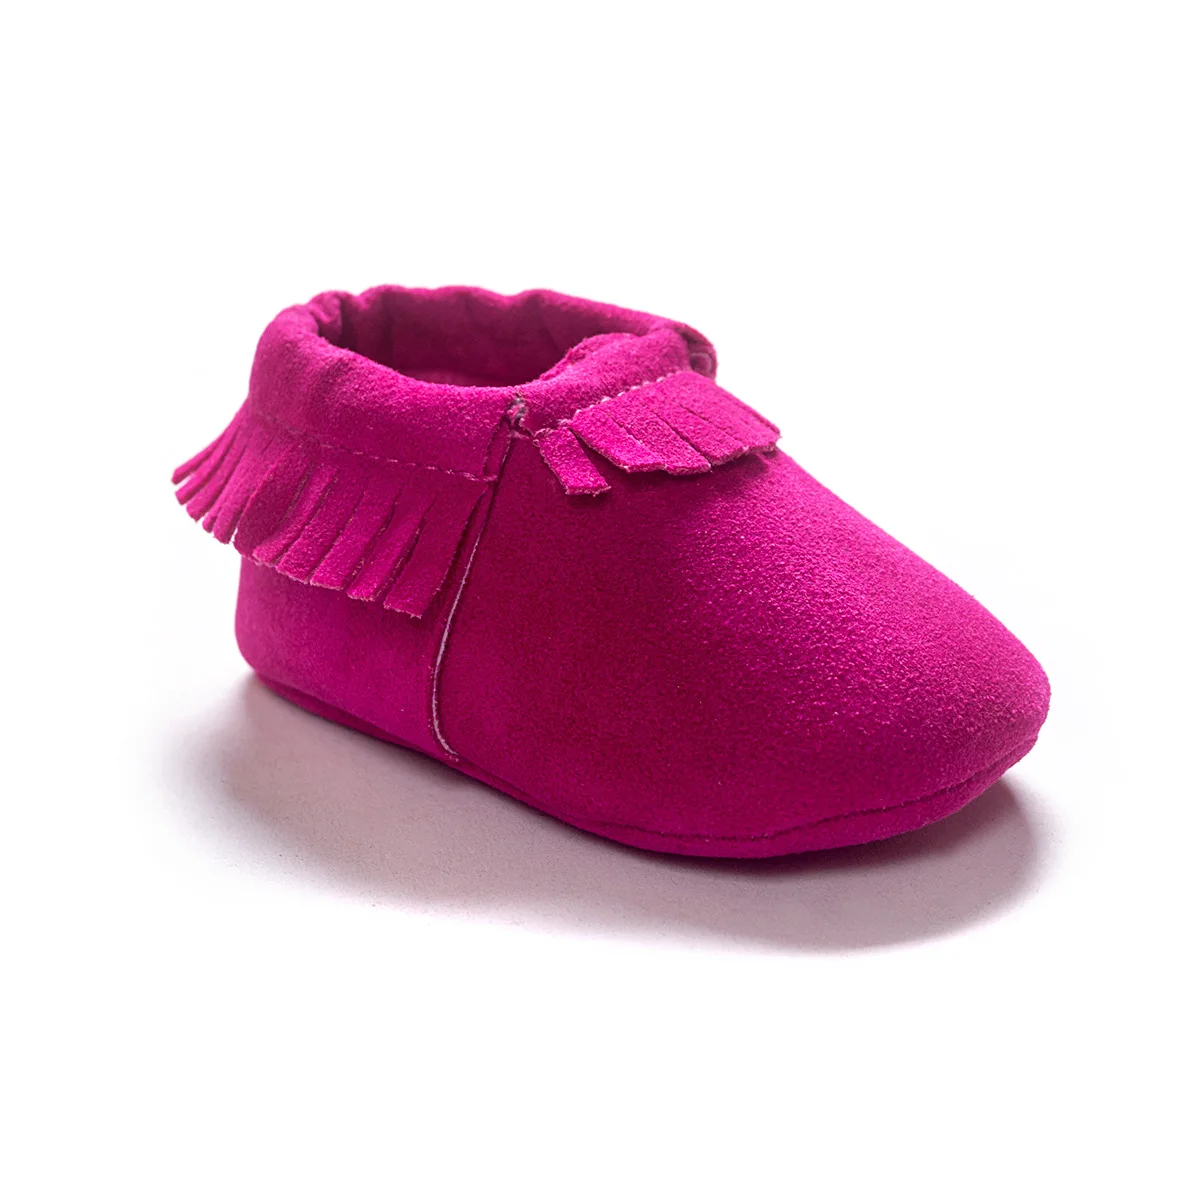 Baby Tassel semelle souple chaussures en cuir Enfant Été Bébé Mocassin 0-18 Mois 